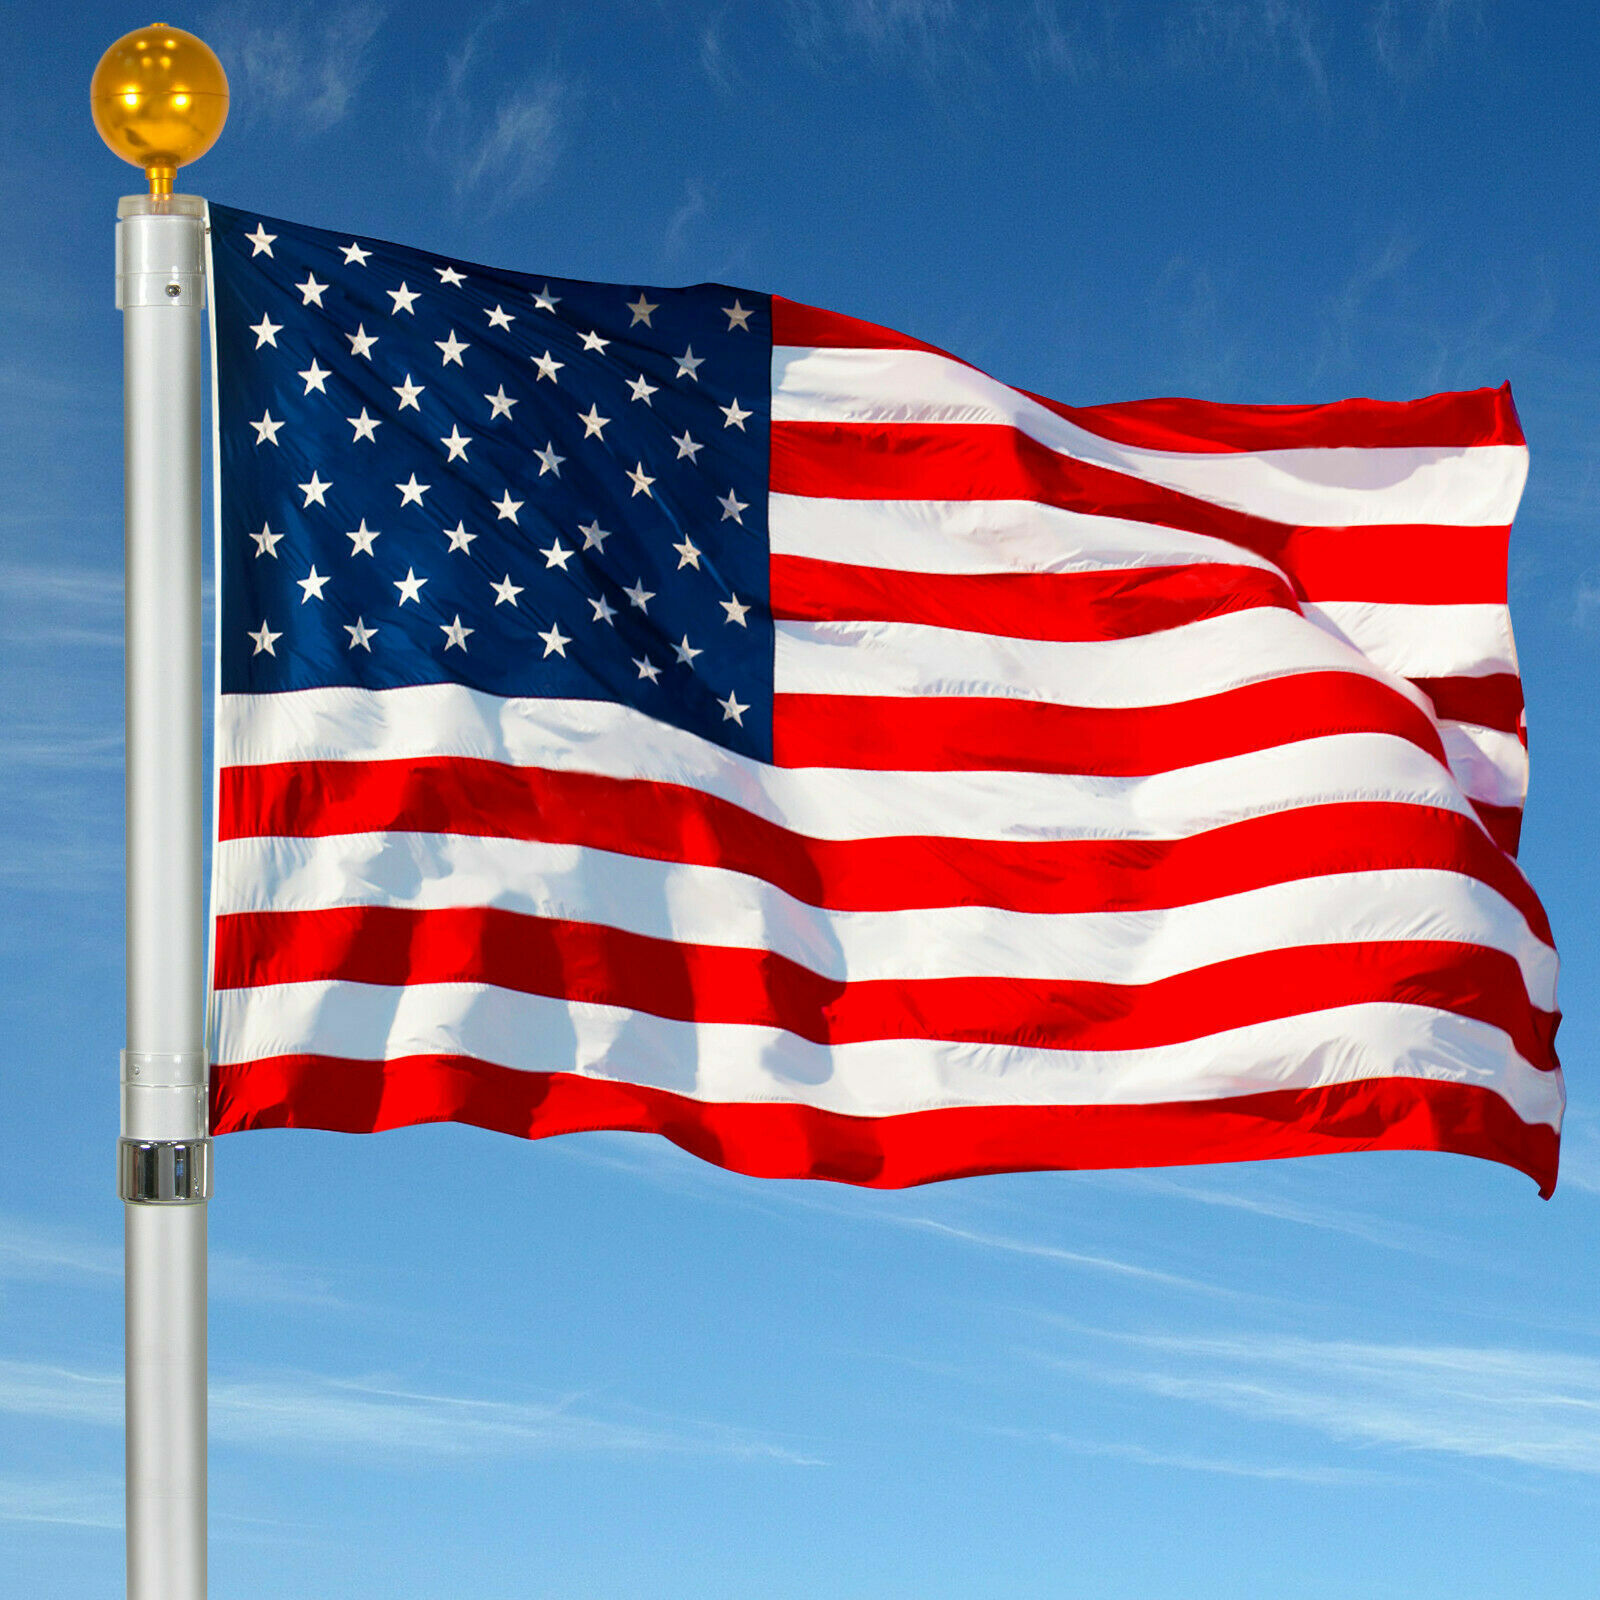 Bandera estadounidense de 3 x 5 pies, ojales de rayas cosidas con estrellas bord